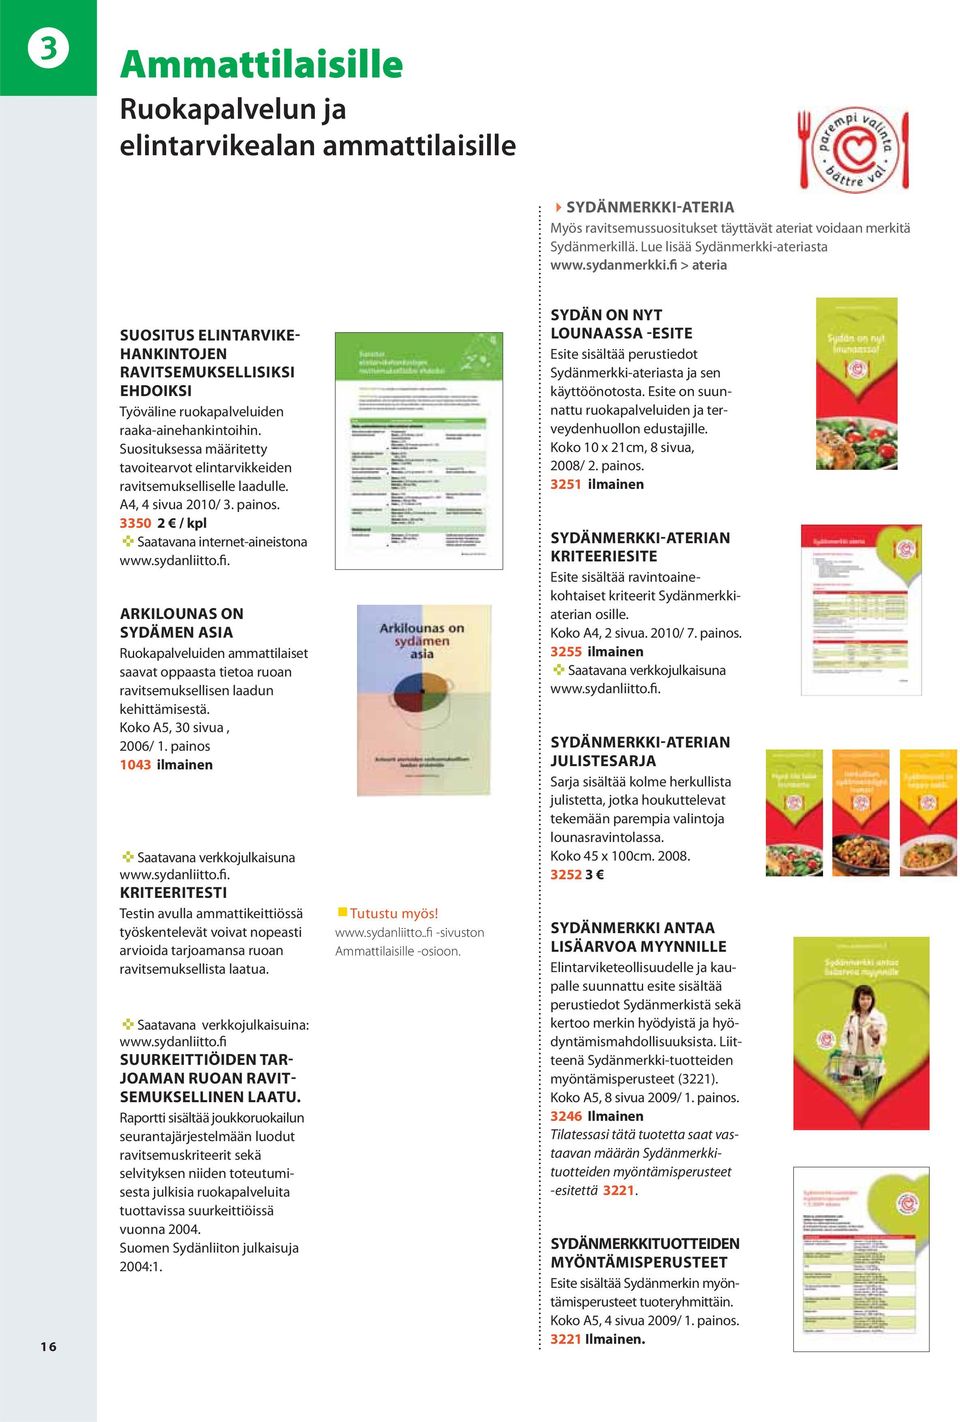 ARKILOUNAS ON SYDÄMEN ASIA Ruokapalveluiden ammattilaiset saavat oppaasta tietoa ruoan ravitsemuksellisen laadun kehittämisestä. Koko A5, 30 sivua, 2006/ 1.